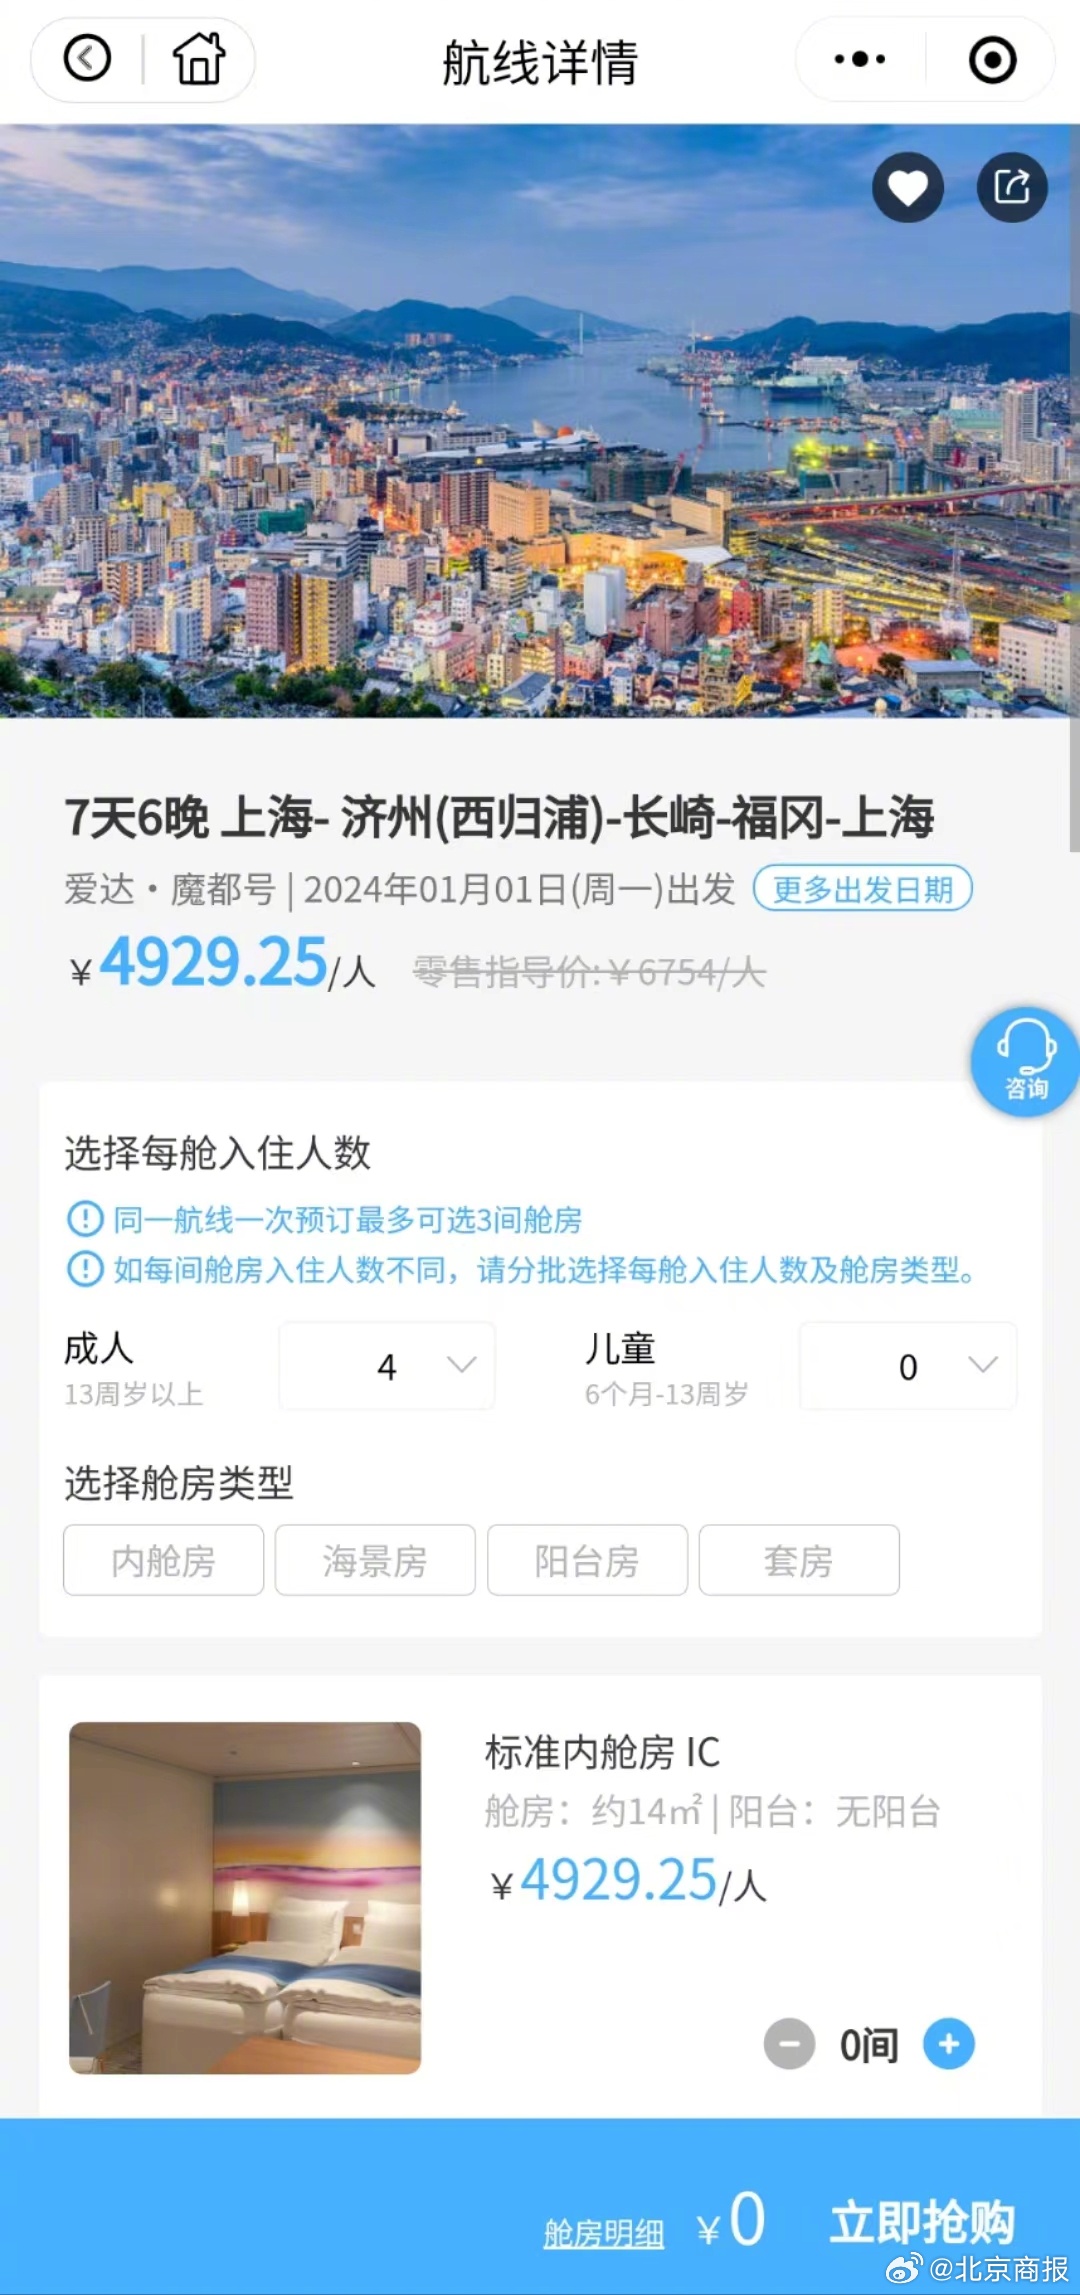 [动态]协同开展十年交出美丽“成绩单” 京津冀迈向世界级城市群